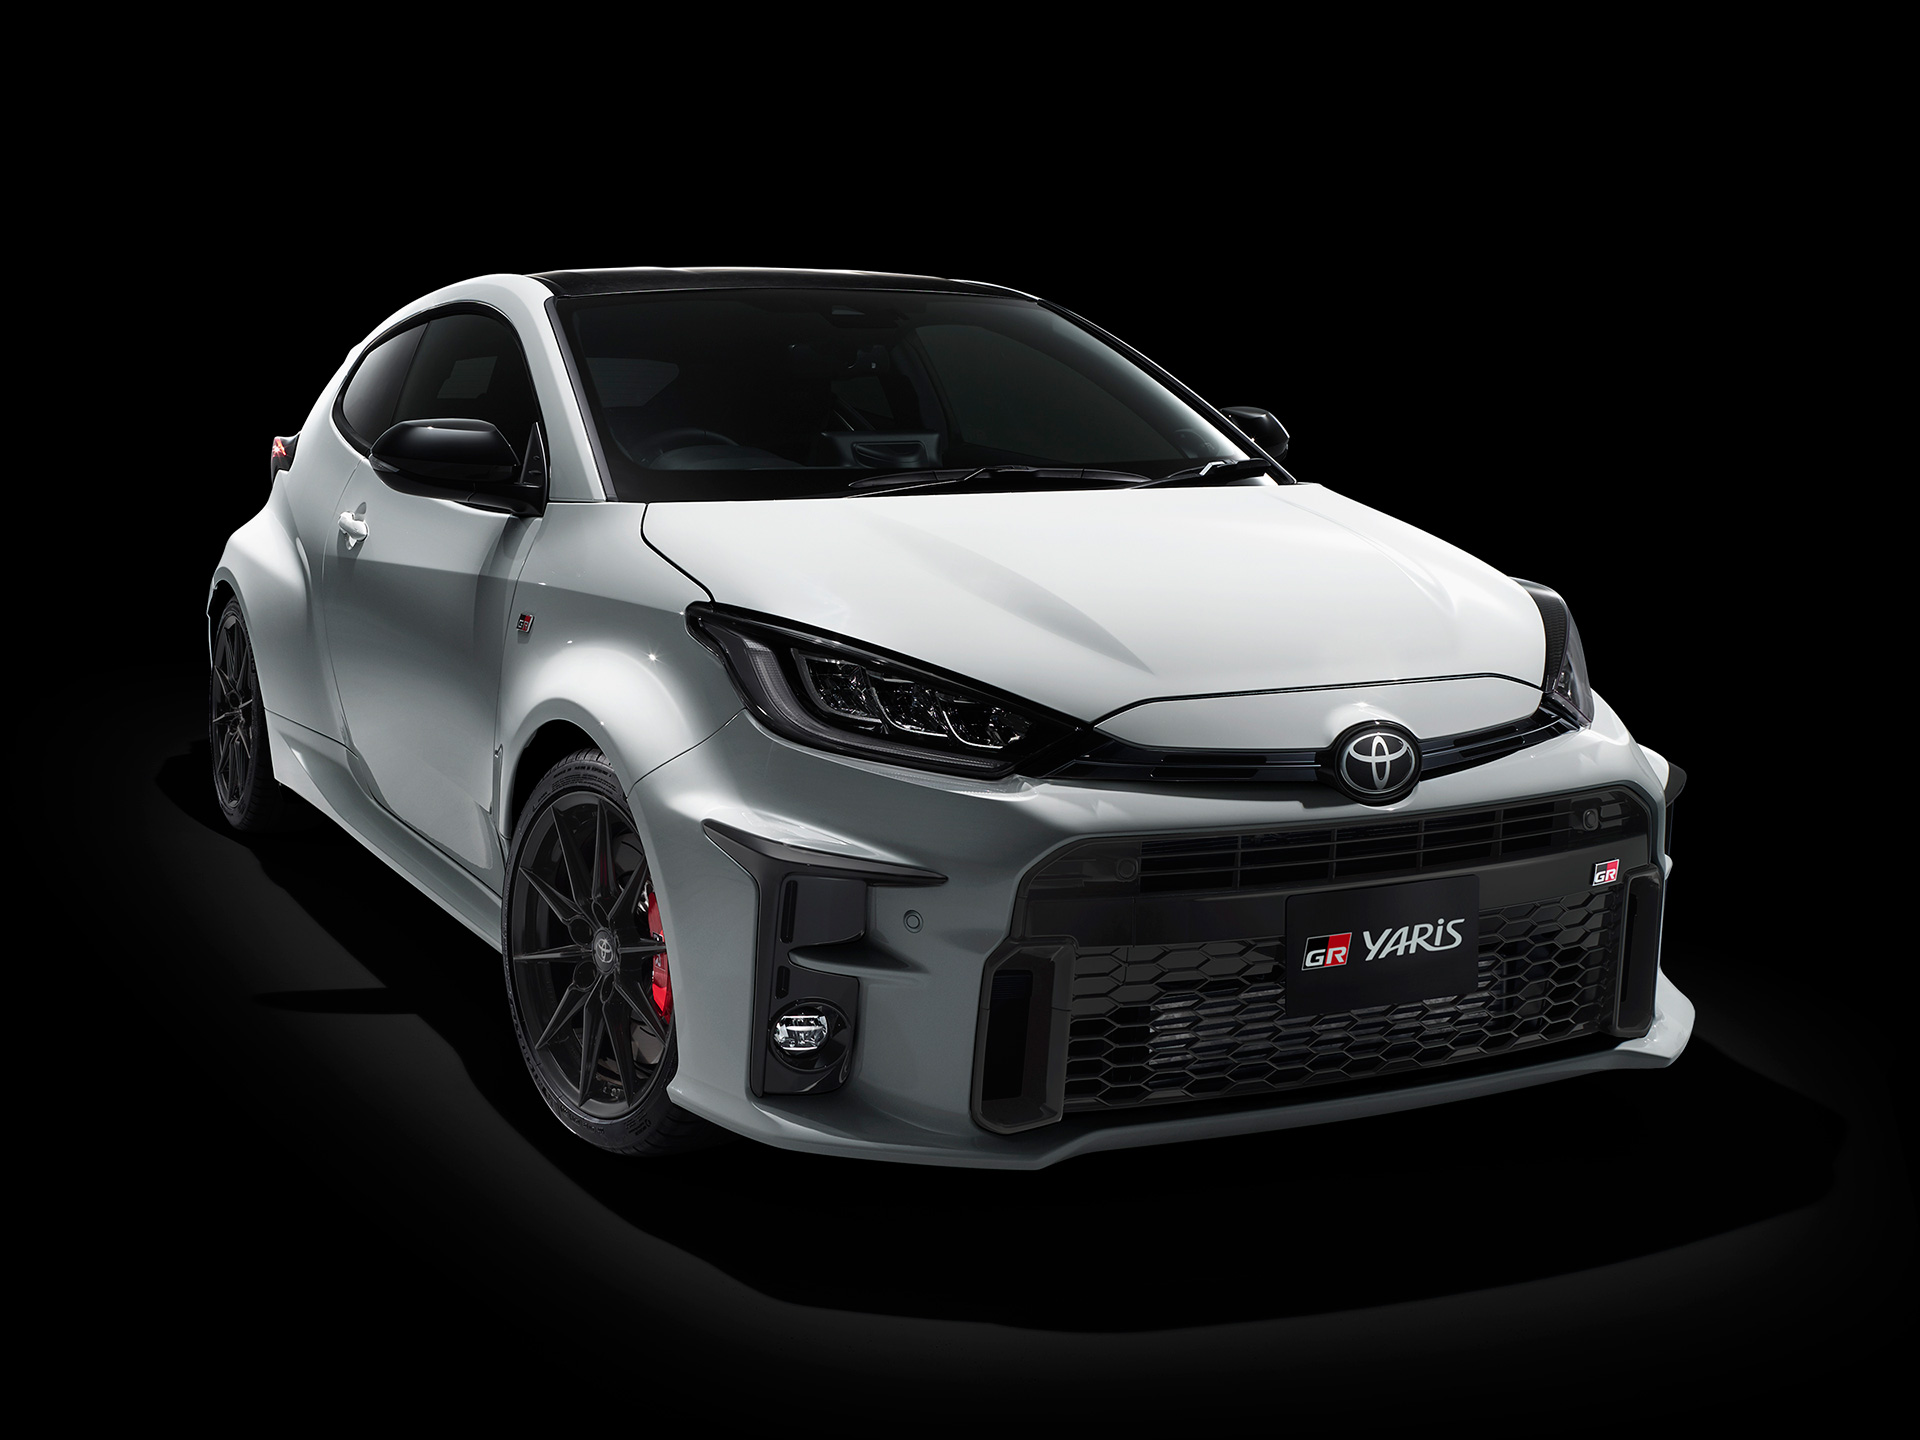 Toyota GR Yaris весит 1280 кг, что должно гарантировать, что она легко достигает 100 км/ч. Toyota еще не выпустила детали производительности. Планируется, что выпуск специального издания RZ «High-performance First Edition» будет стоить 4,56 миллиона 